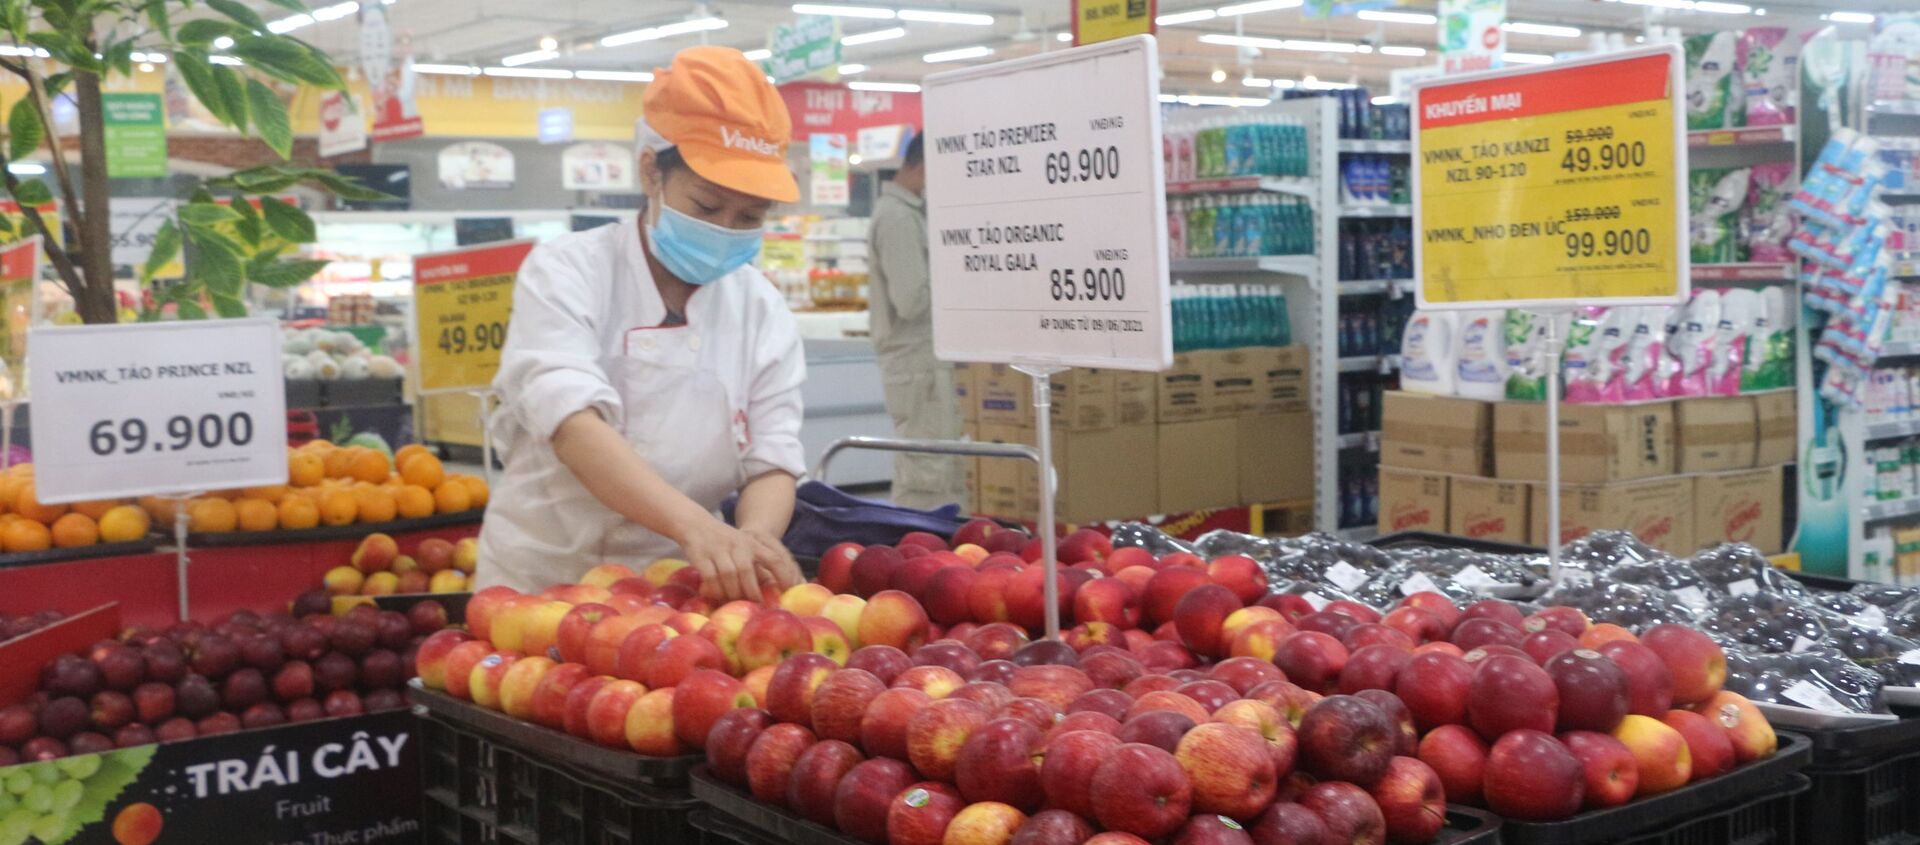 Trung tâm thương mại, siêu thị chủ động tăng cường đội ngũ nhân viên, liên tục đưa hàng lên kệ, tăng thời gian phục vụ đặc biệt vào các ngày cuối tuần - Sputnik Việt Nam, 1920, 06.07.2021